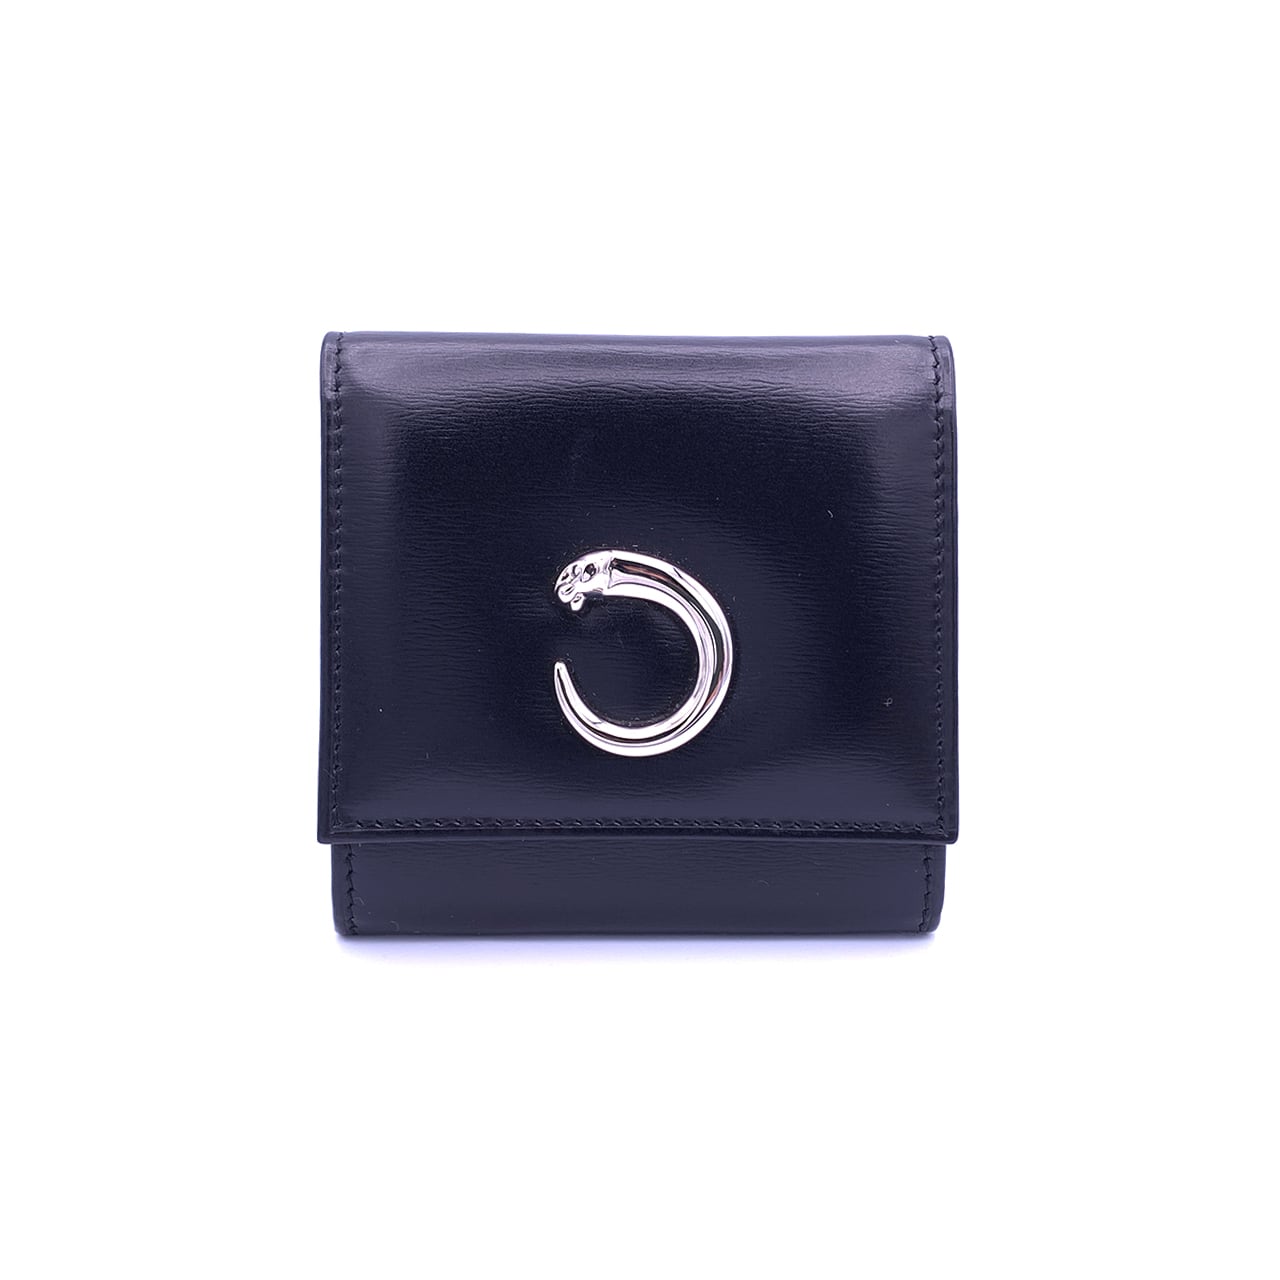 Cartier カルティエ パンテール レザー コインケース 財布 ブラック 箱